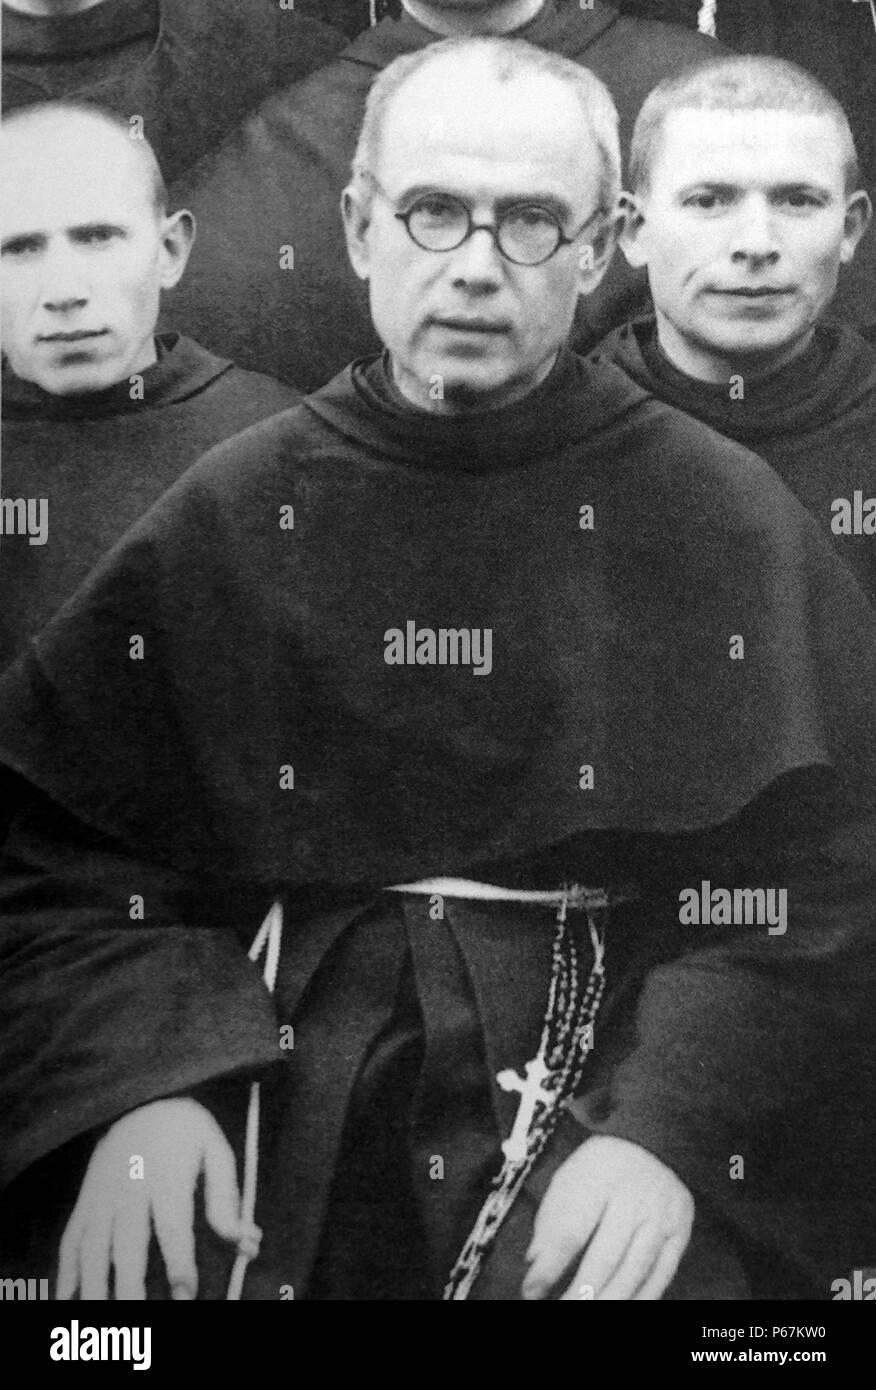 Fotografia di Massimiliano Kolbe (1894-1941) tradizionali Polacchi Frate Francescano, che si prestarono a morire al posto di uno straniero nella nazista tedesco campo di sterminio di Auschwitz, situato in tedesco-Polonia occupata durante la Seconda Guerra Mondiale. Datata 1939 Foto Stock